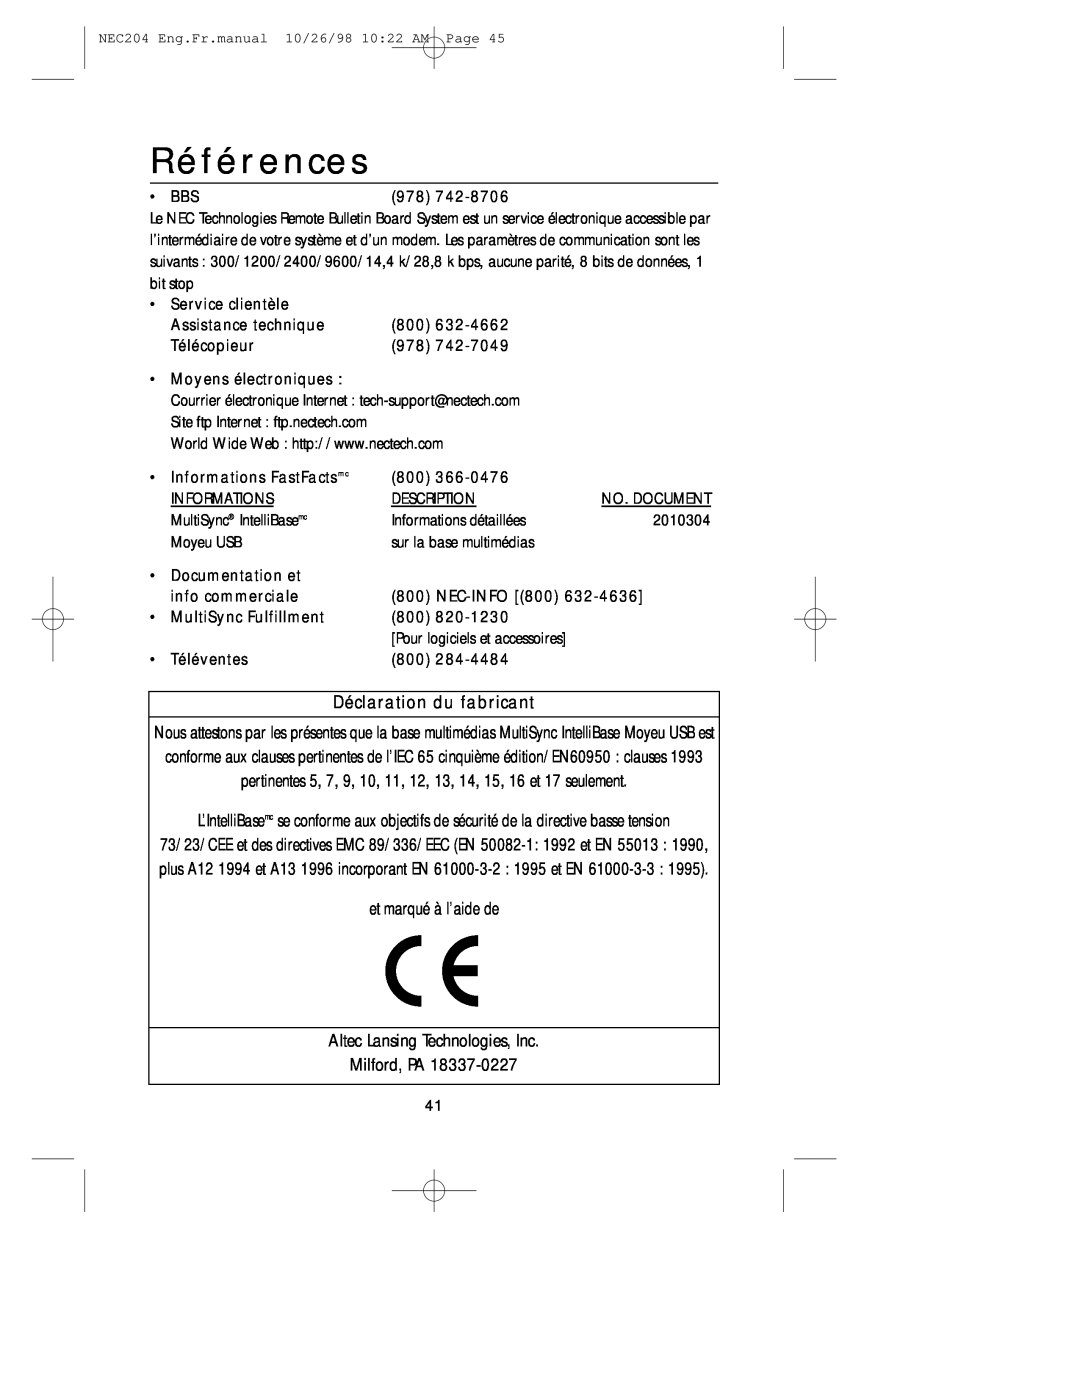 NEC A3844, IB-USB user manual Références, Déclaration du fabricant 